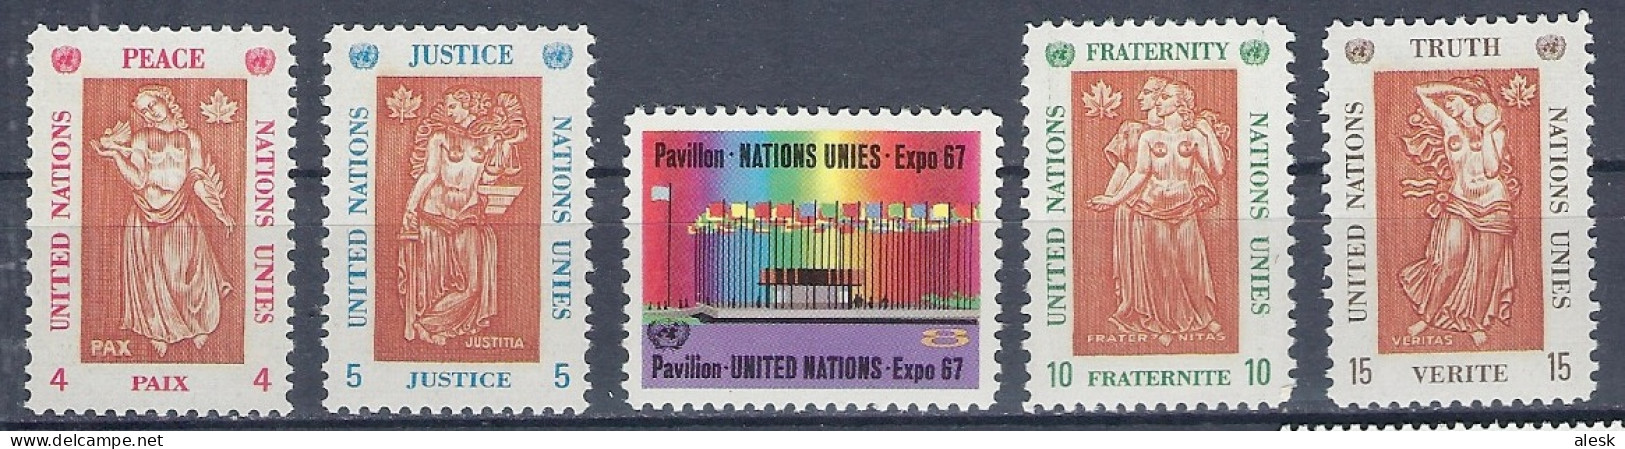 NATIONS-UNIES New-York 1967 - Série N°165 à 169 (y&t) - Exposition Montréal - Paix - Justice - Fraternité - Vérité - Ongebruikt